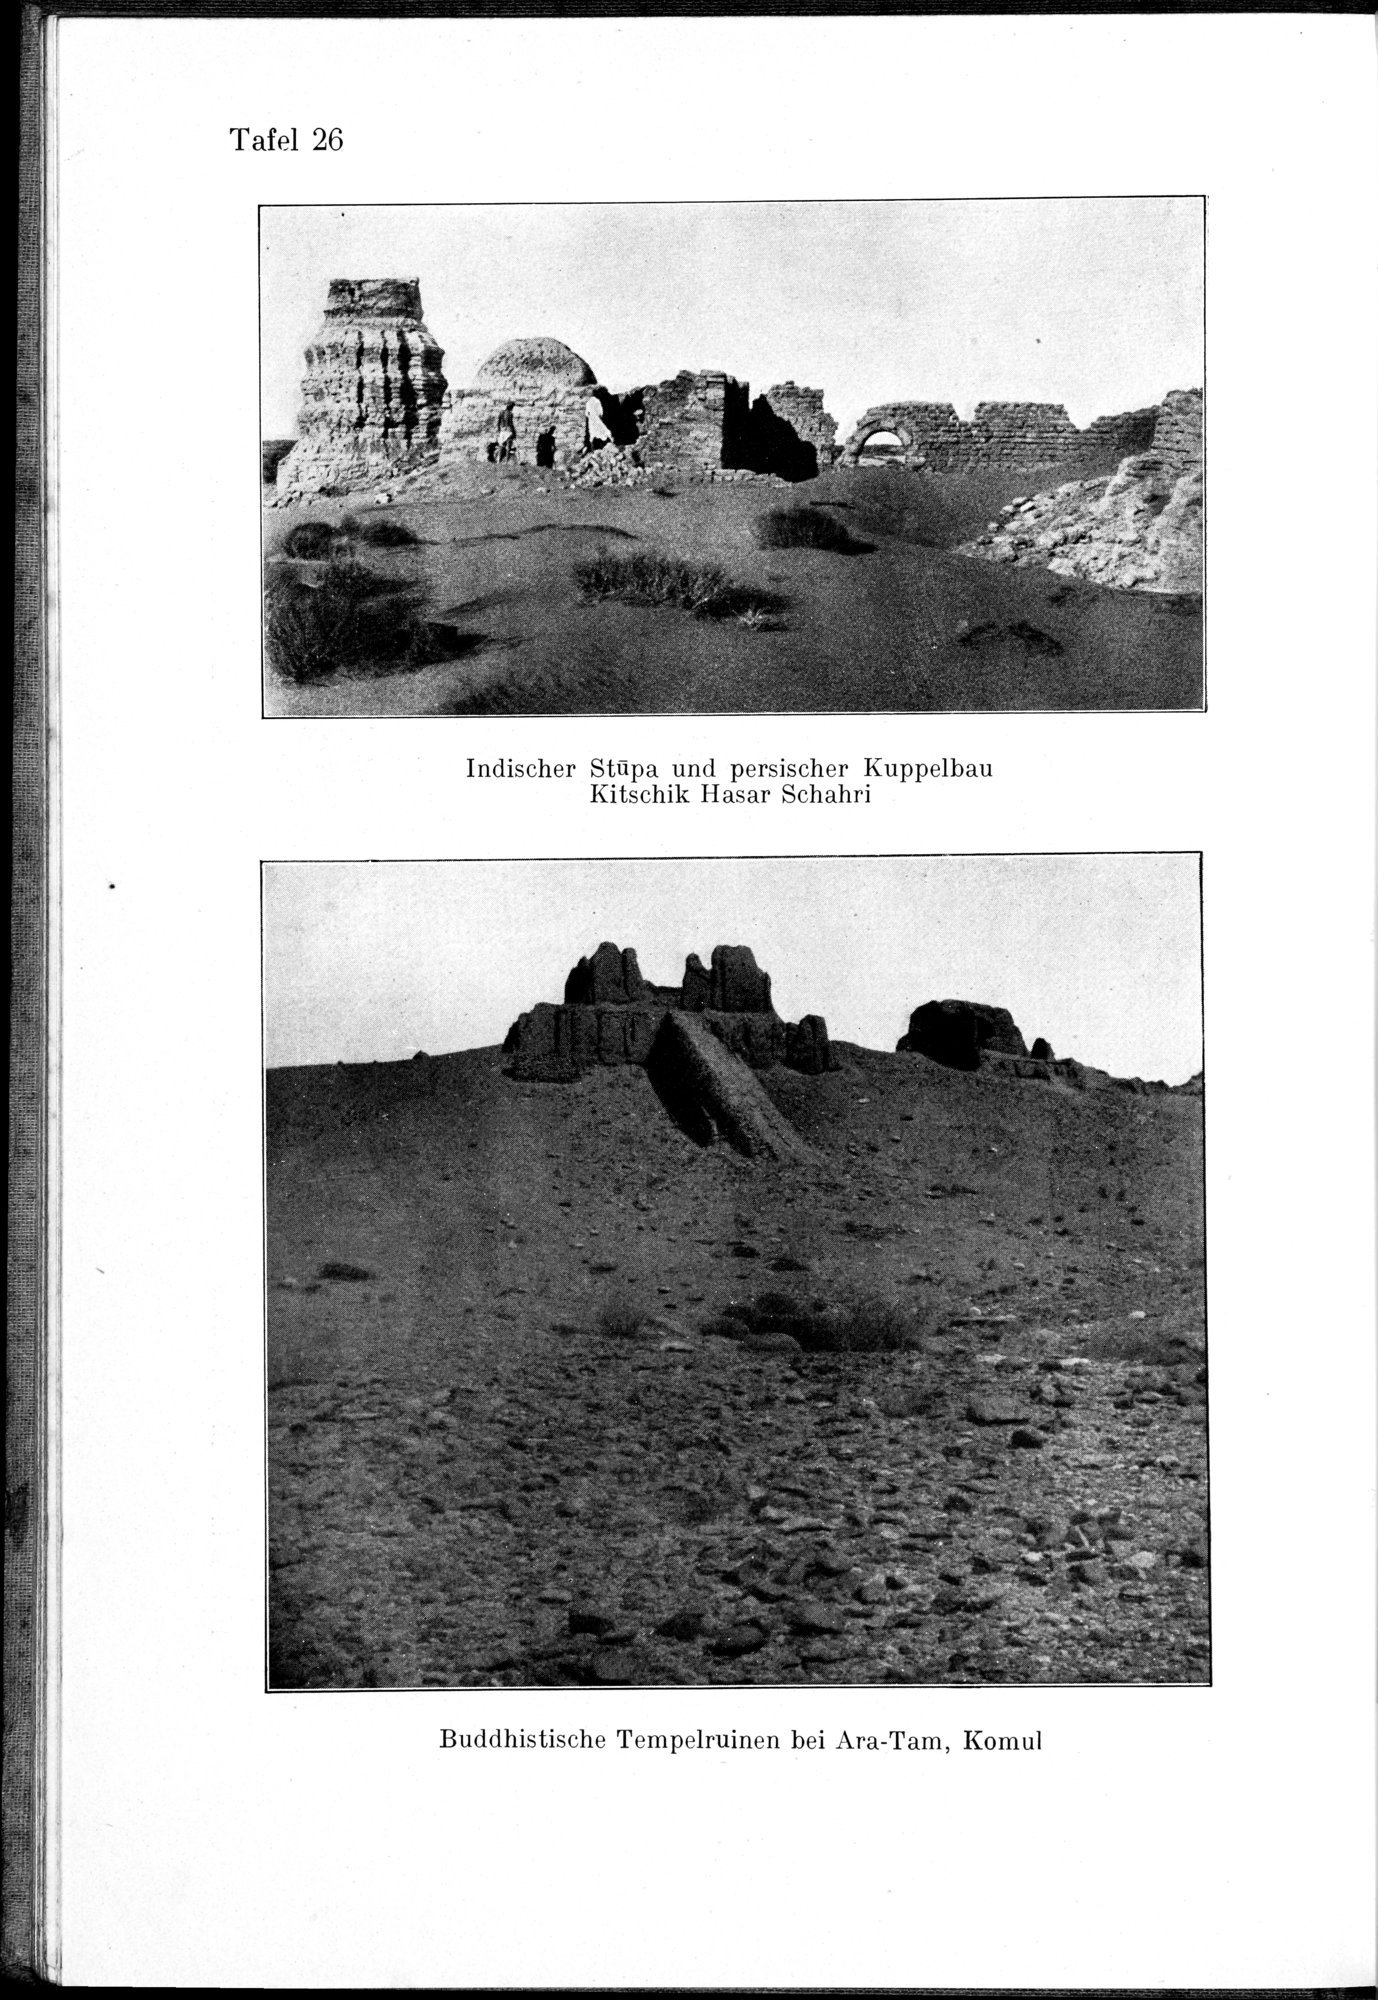 Auf Hellas Spuren in Ostturkistan : vol.1 / Page 130 (Grayscale High Resolution Image)